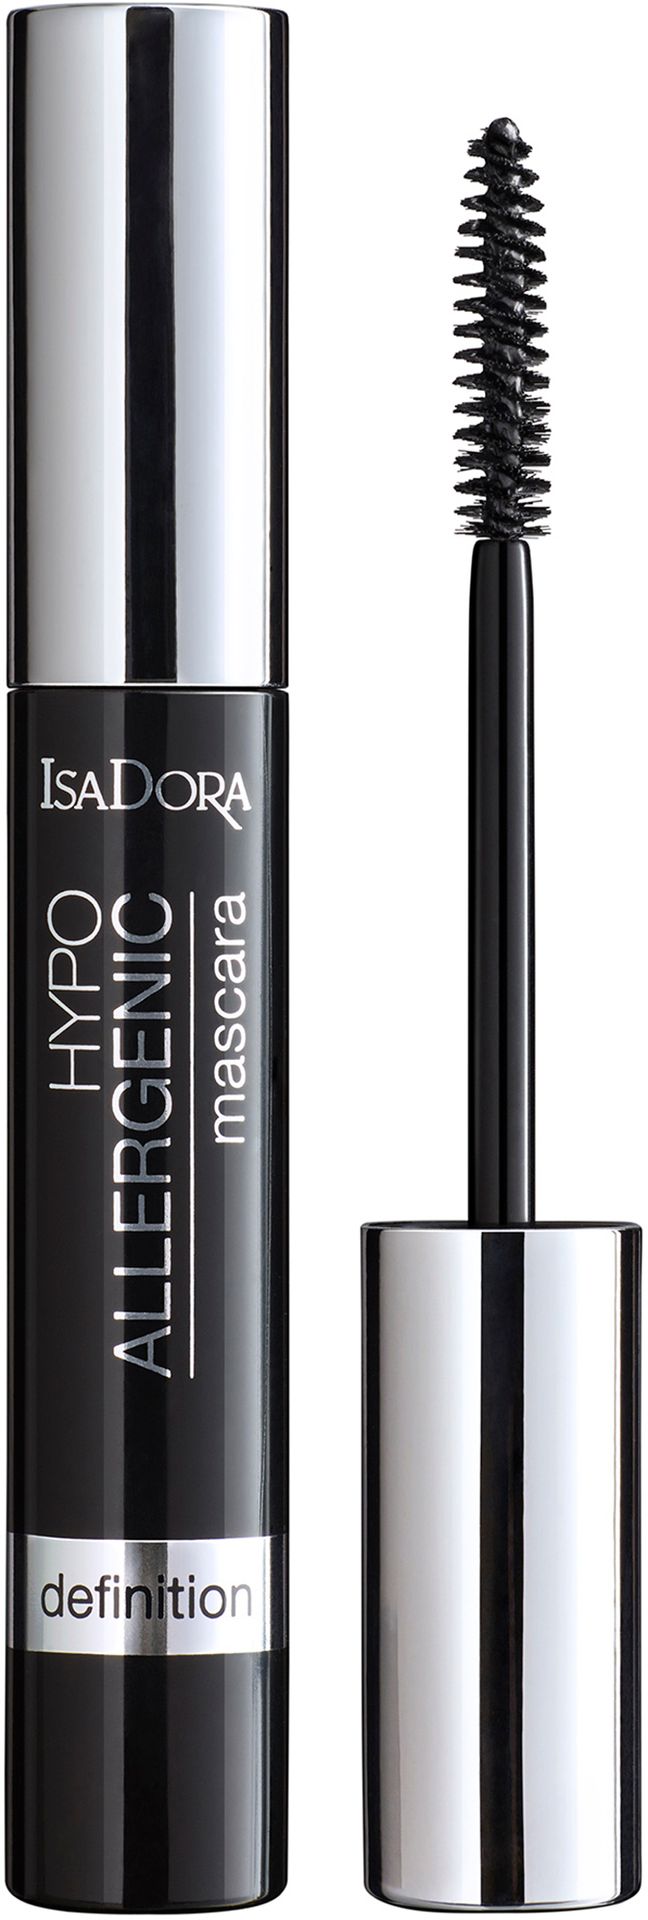 IsaDora Hypo-Allergenic Mascara NEW 10 ml - tusz do rzęs Black